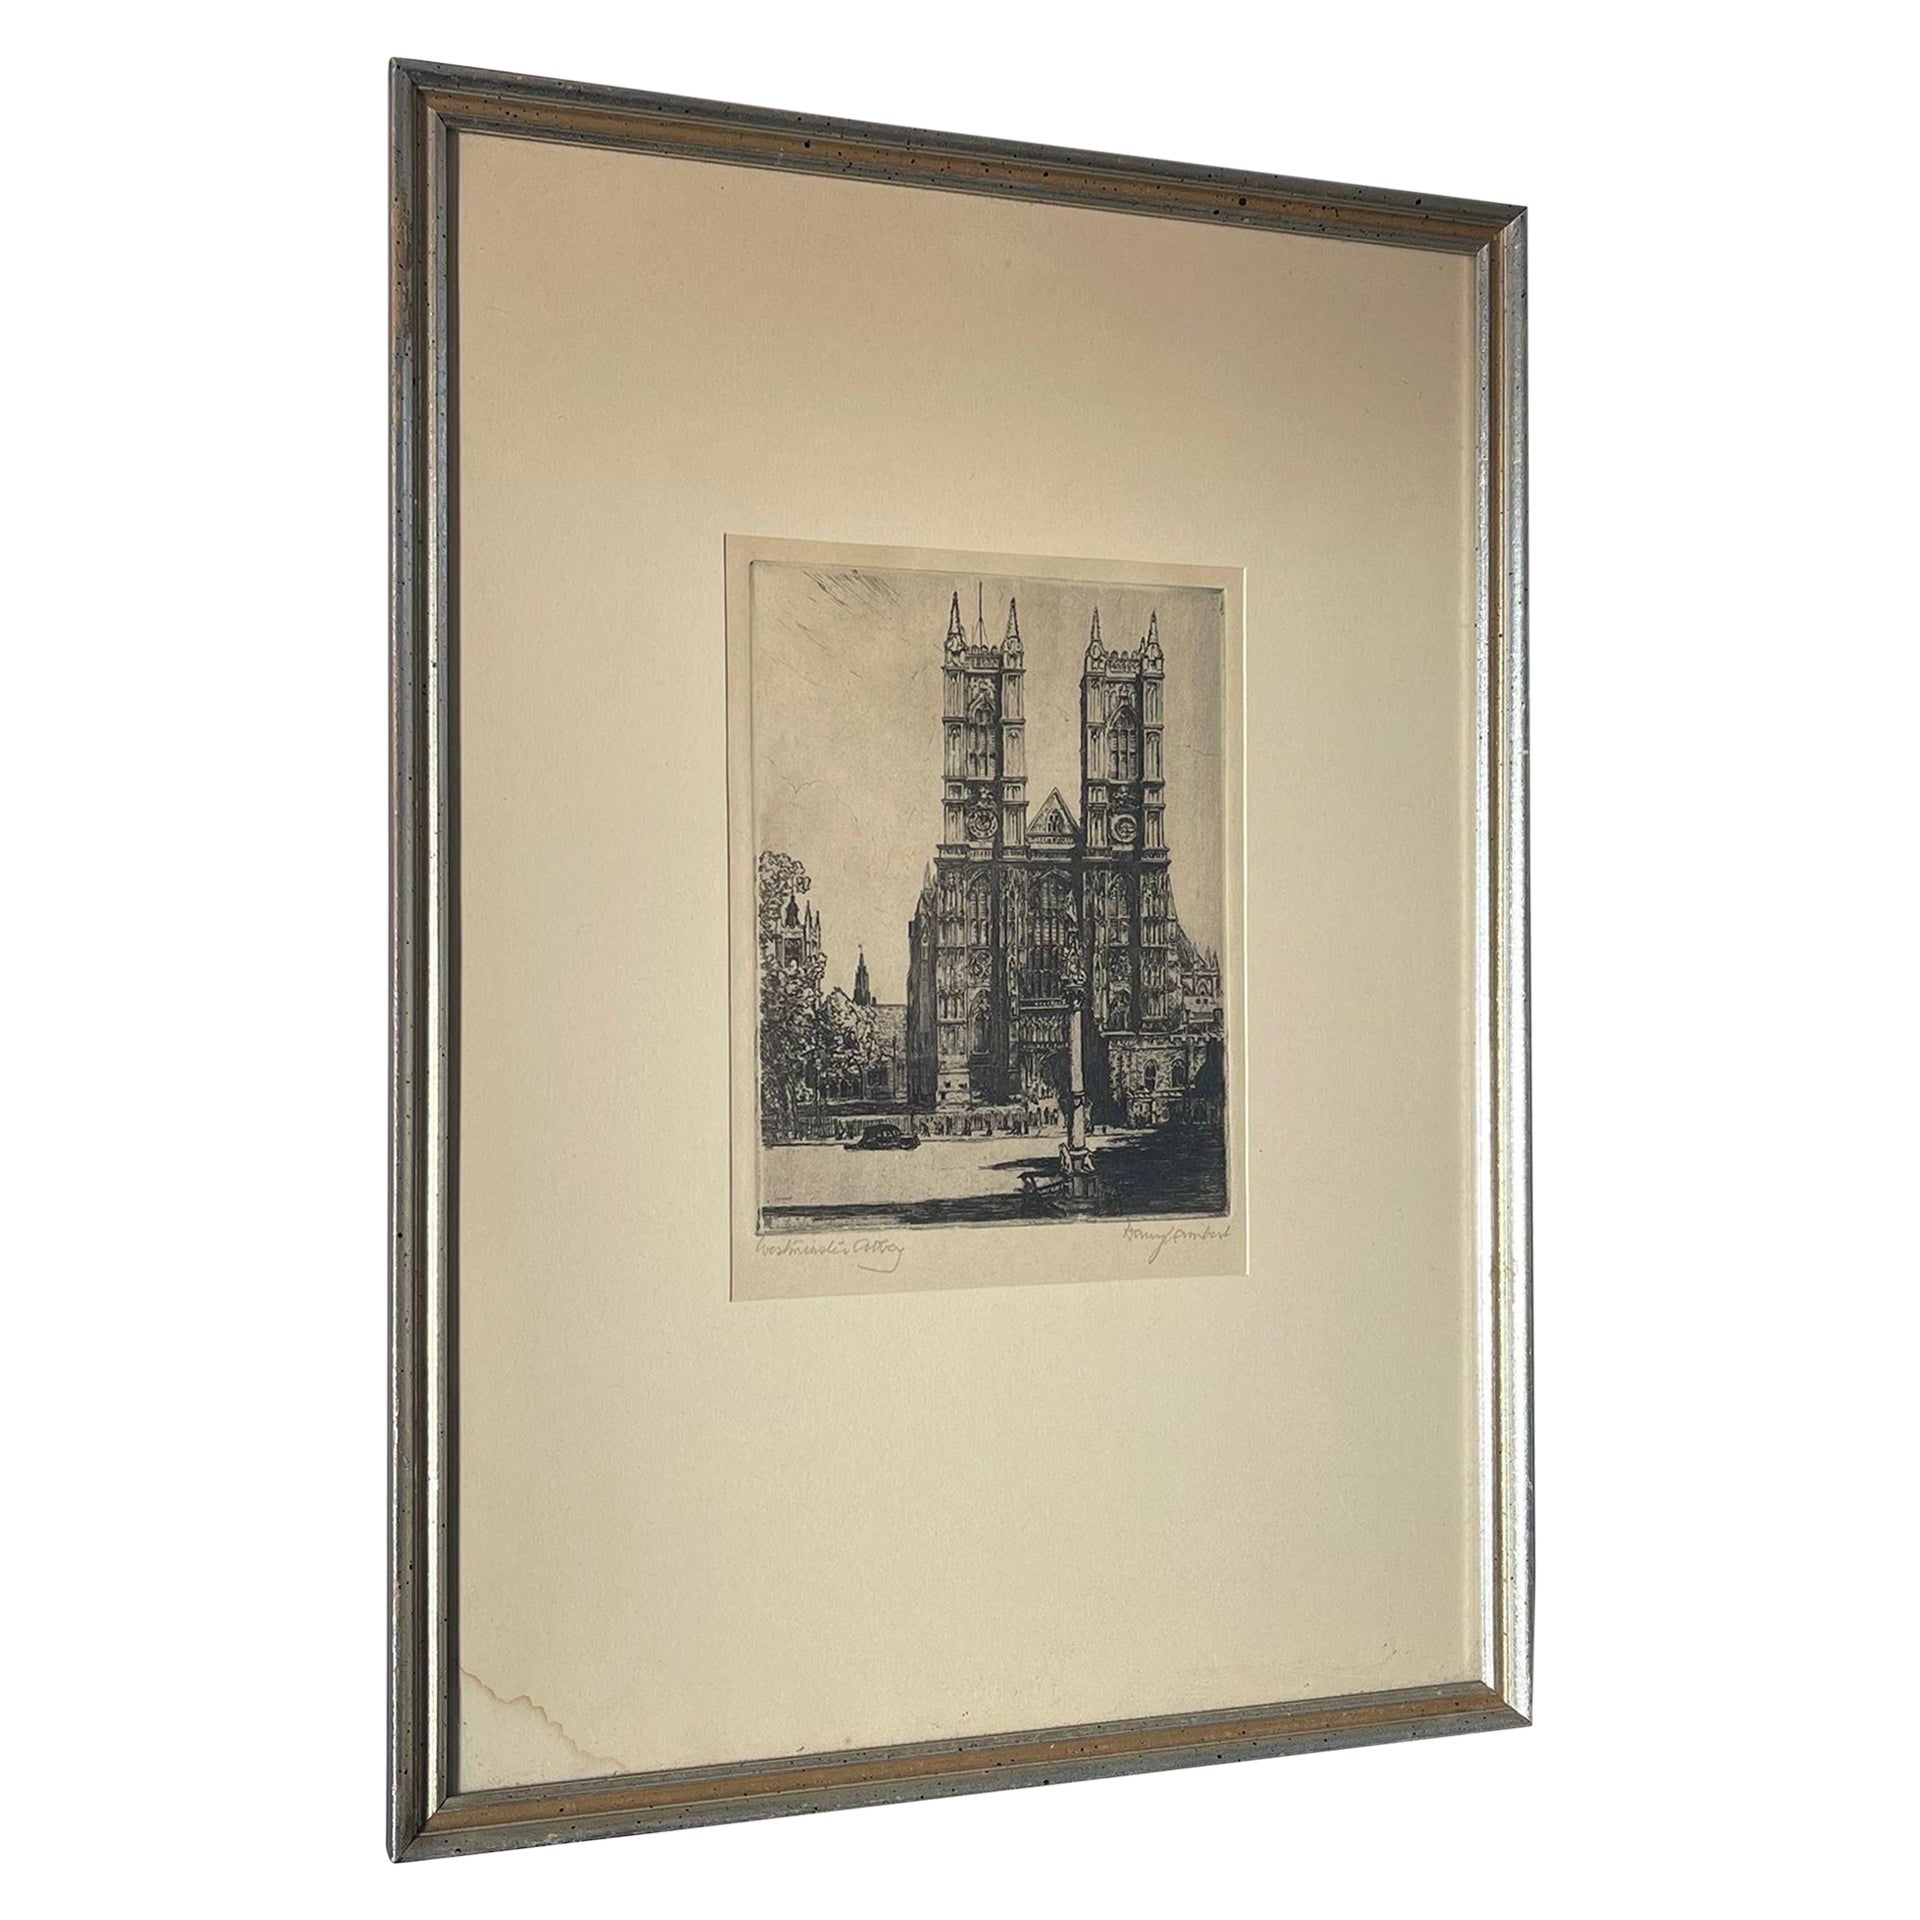 Signierter und gerahmter Vintage-Kunstdruck der Westminster Abbey.